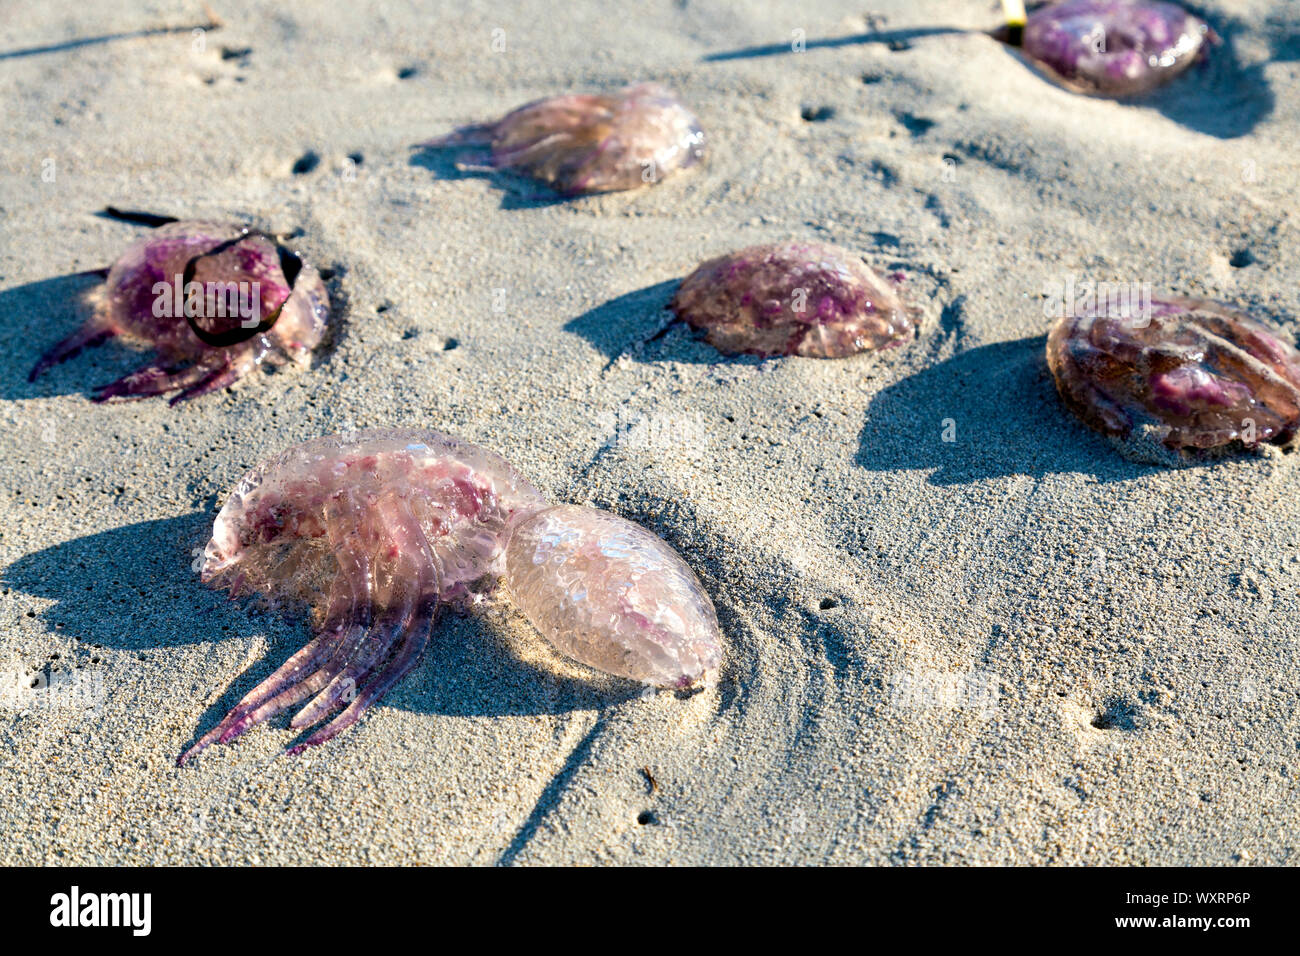 Les méduses échouées sur la plage de Llevant, les changements de température et le réchauffement climatique est à l'origine arrivée de méduses, Ibiza, Iles Baléares, Espagne Banque D'Images